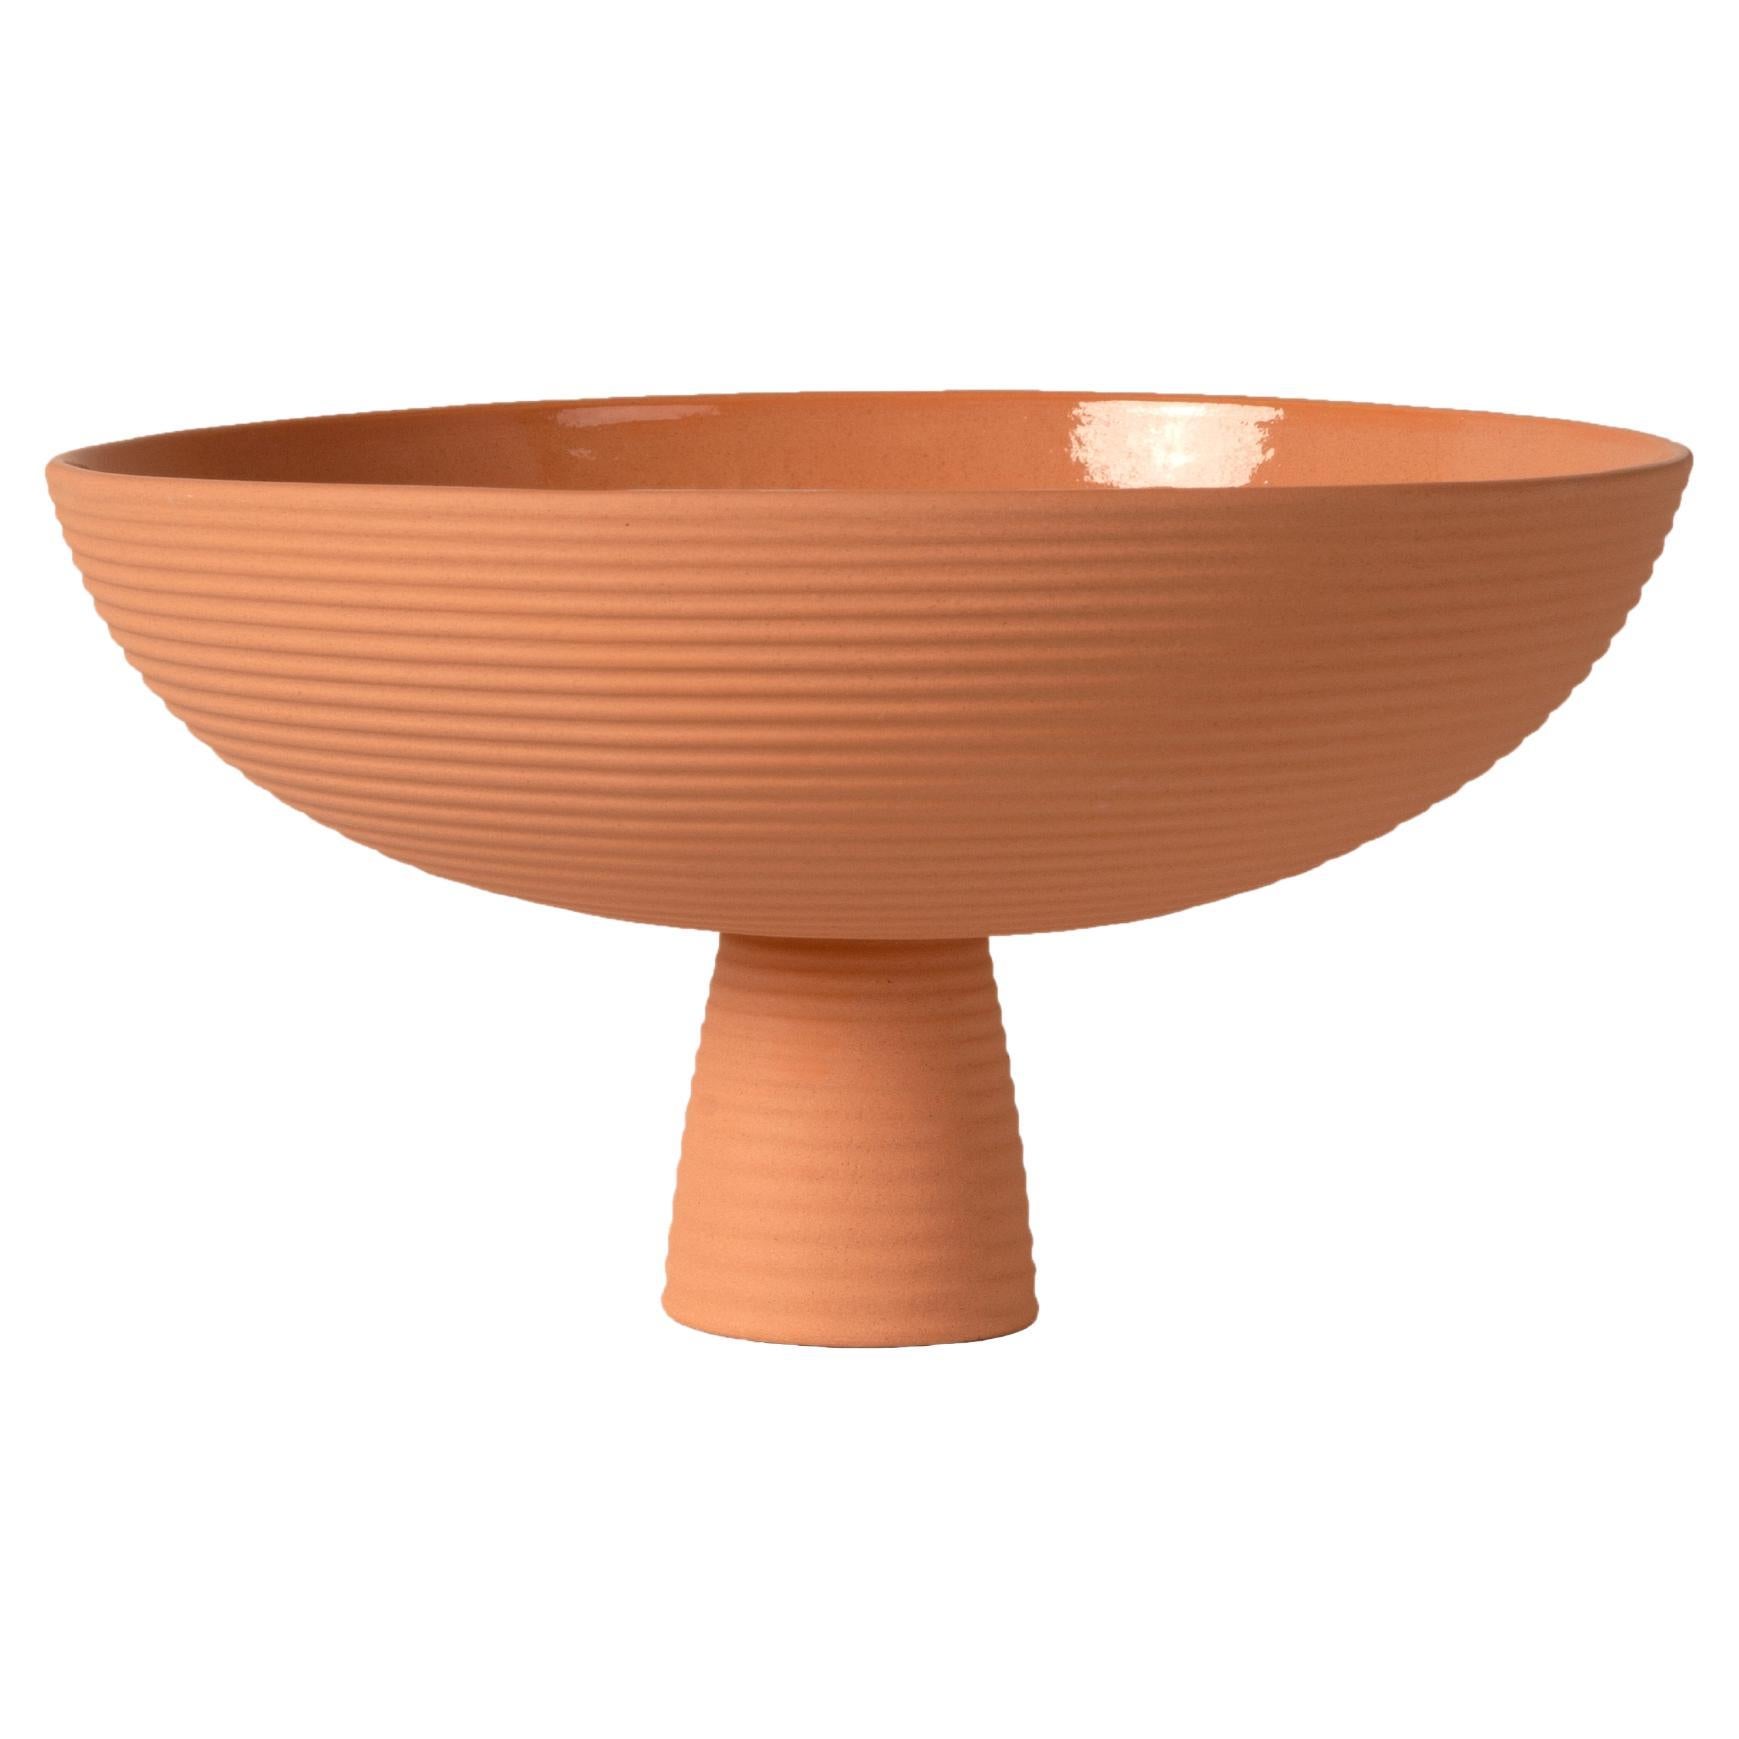 Schneid Studio Dais Ceramic Bowl, Peach For Sale